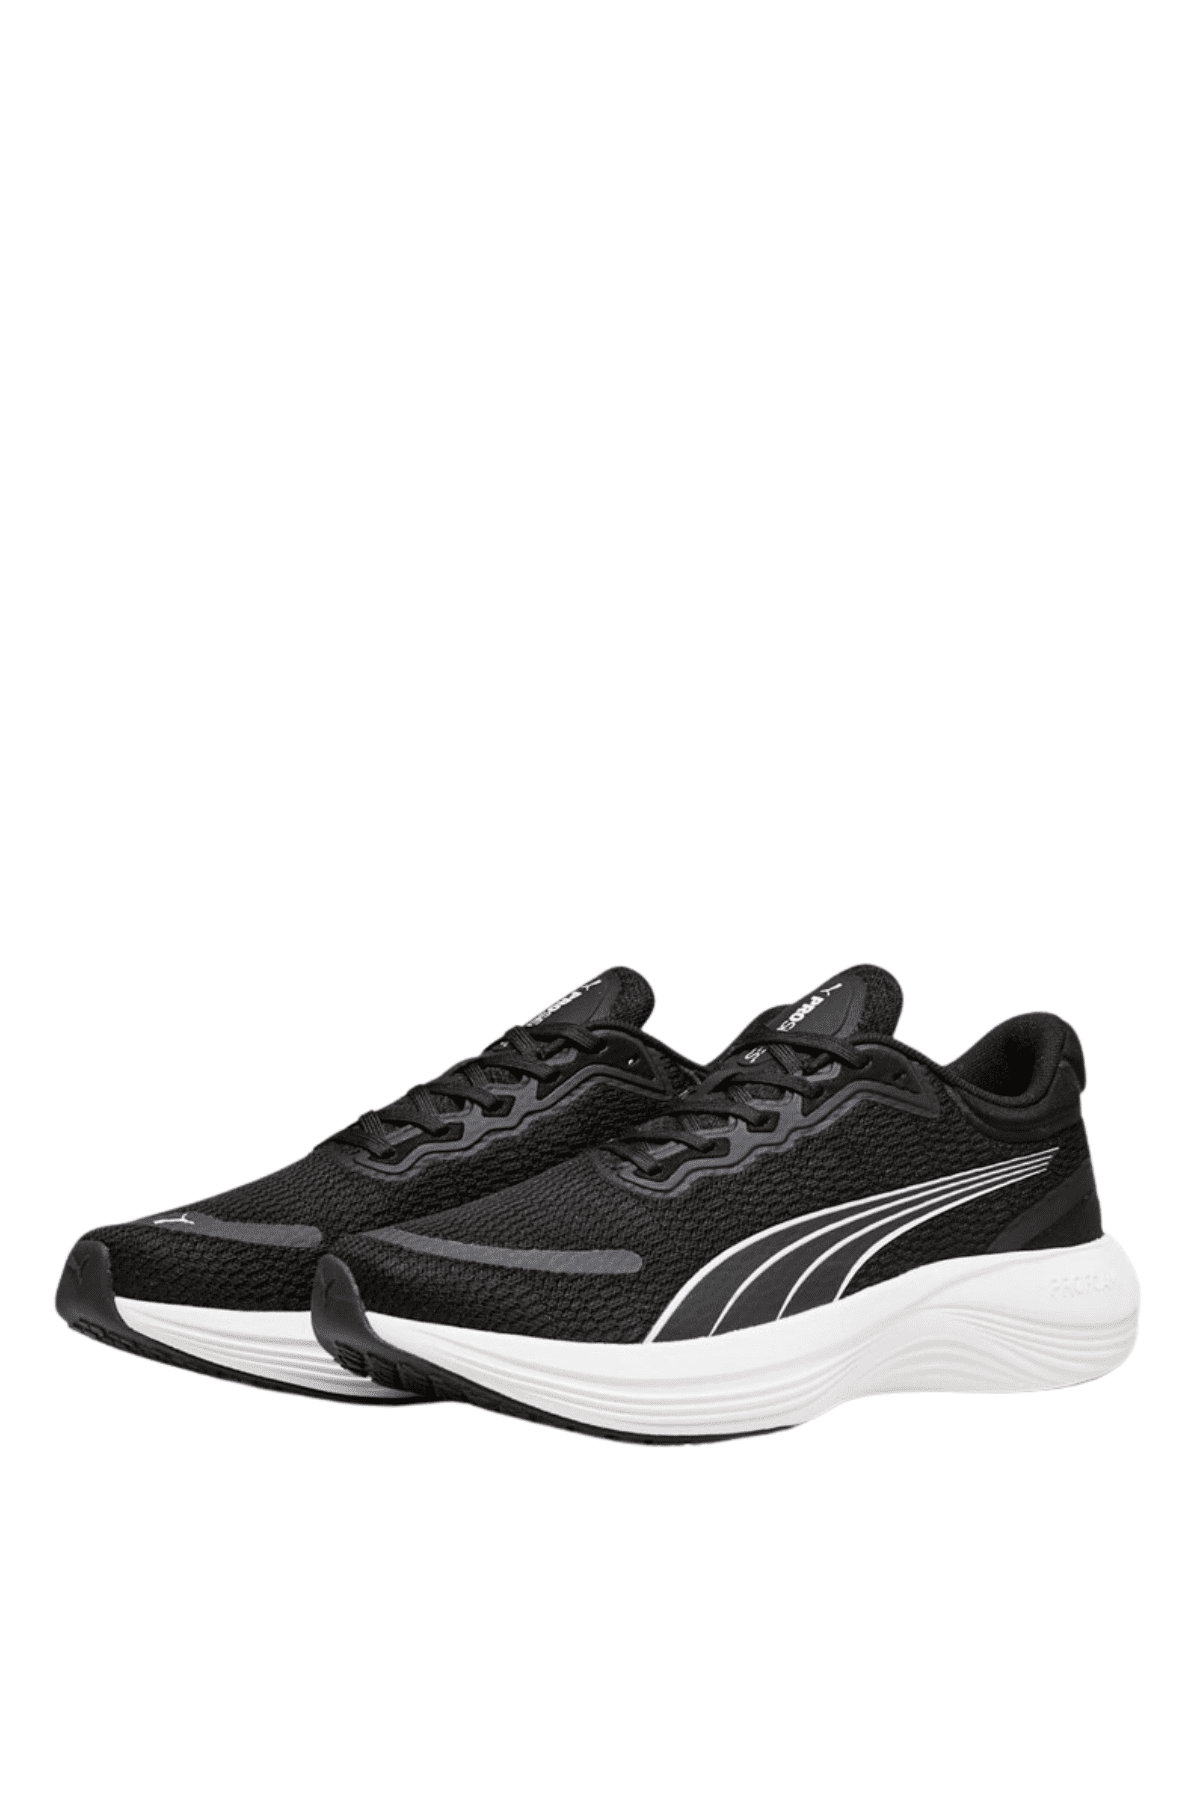 נעלי ספורט פומה לגברים Puma Scend Pro בצבע שחור-Puma-40-נאקו